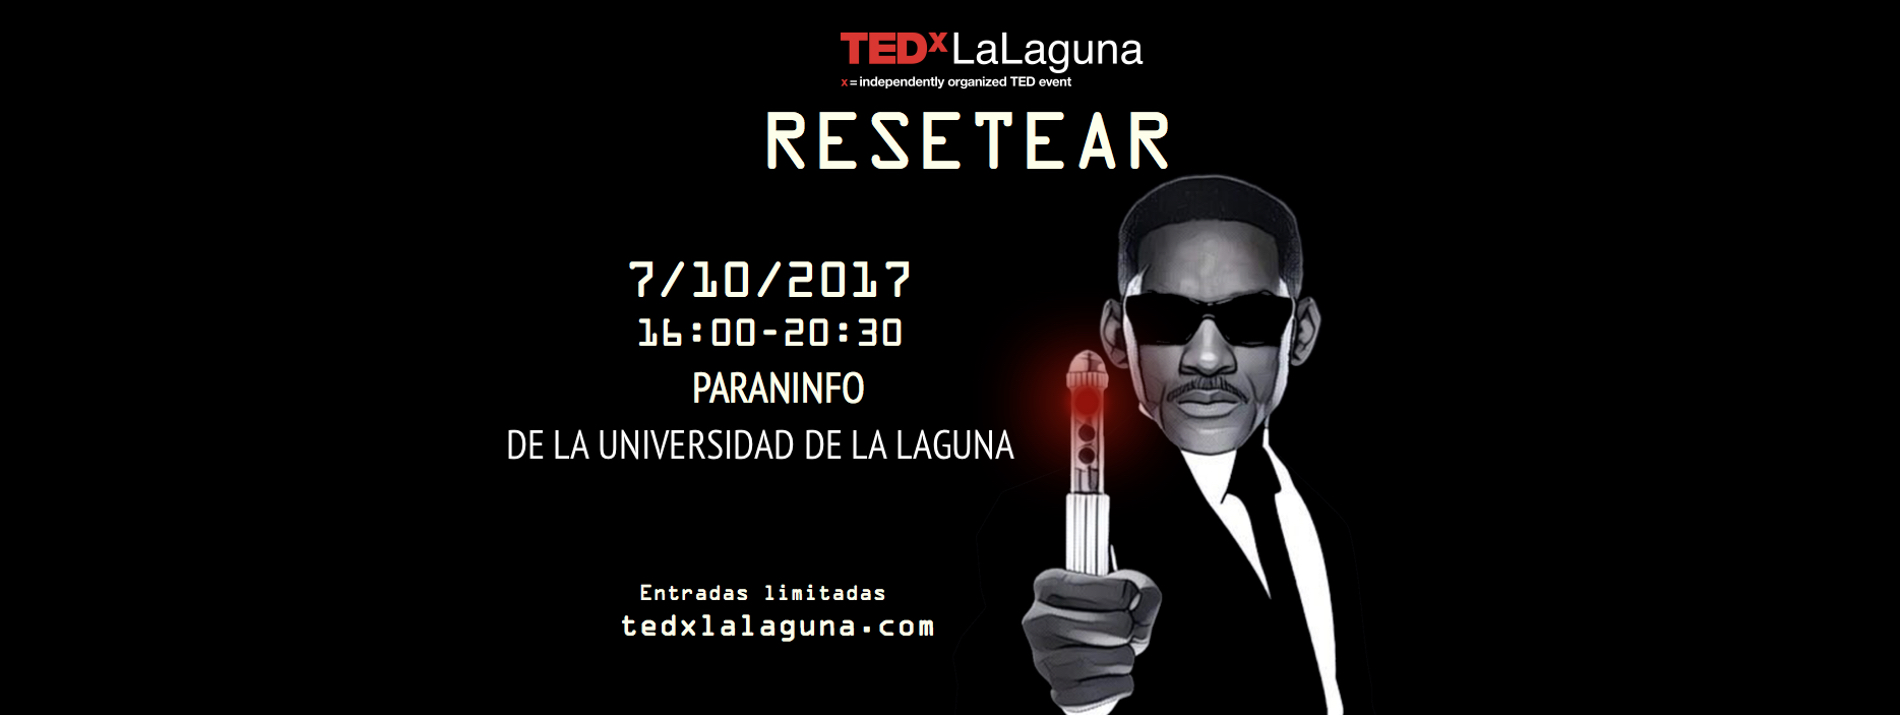 TEDxLaLaguna 2017 – Cartel